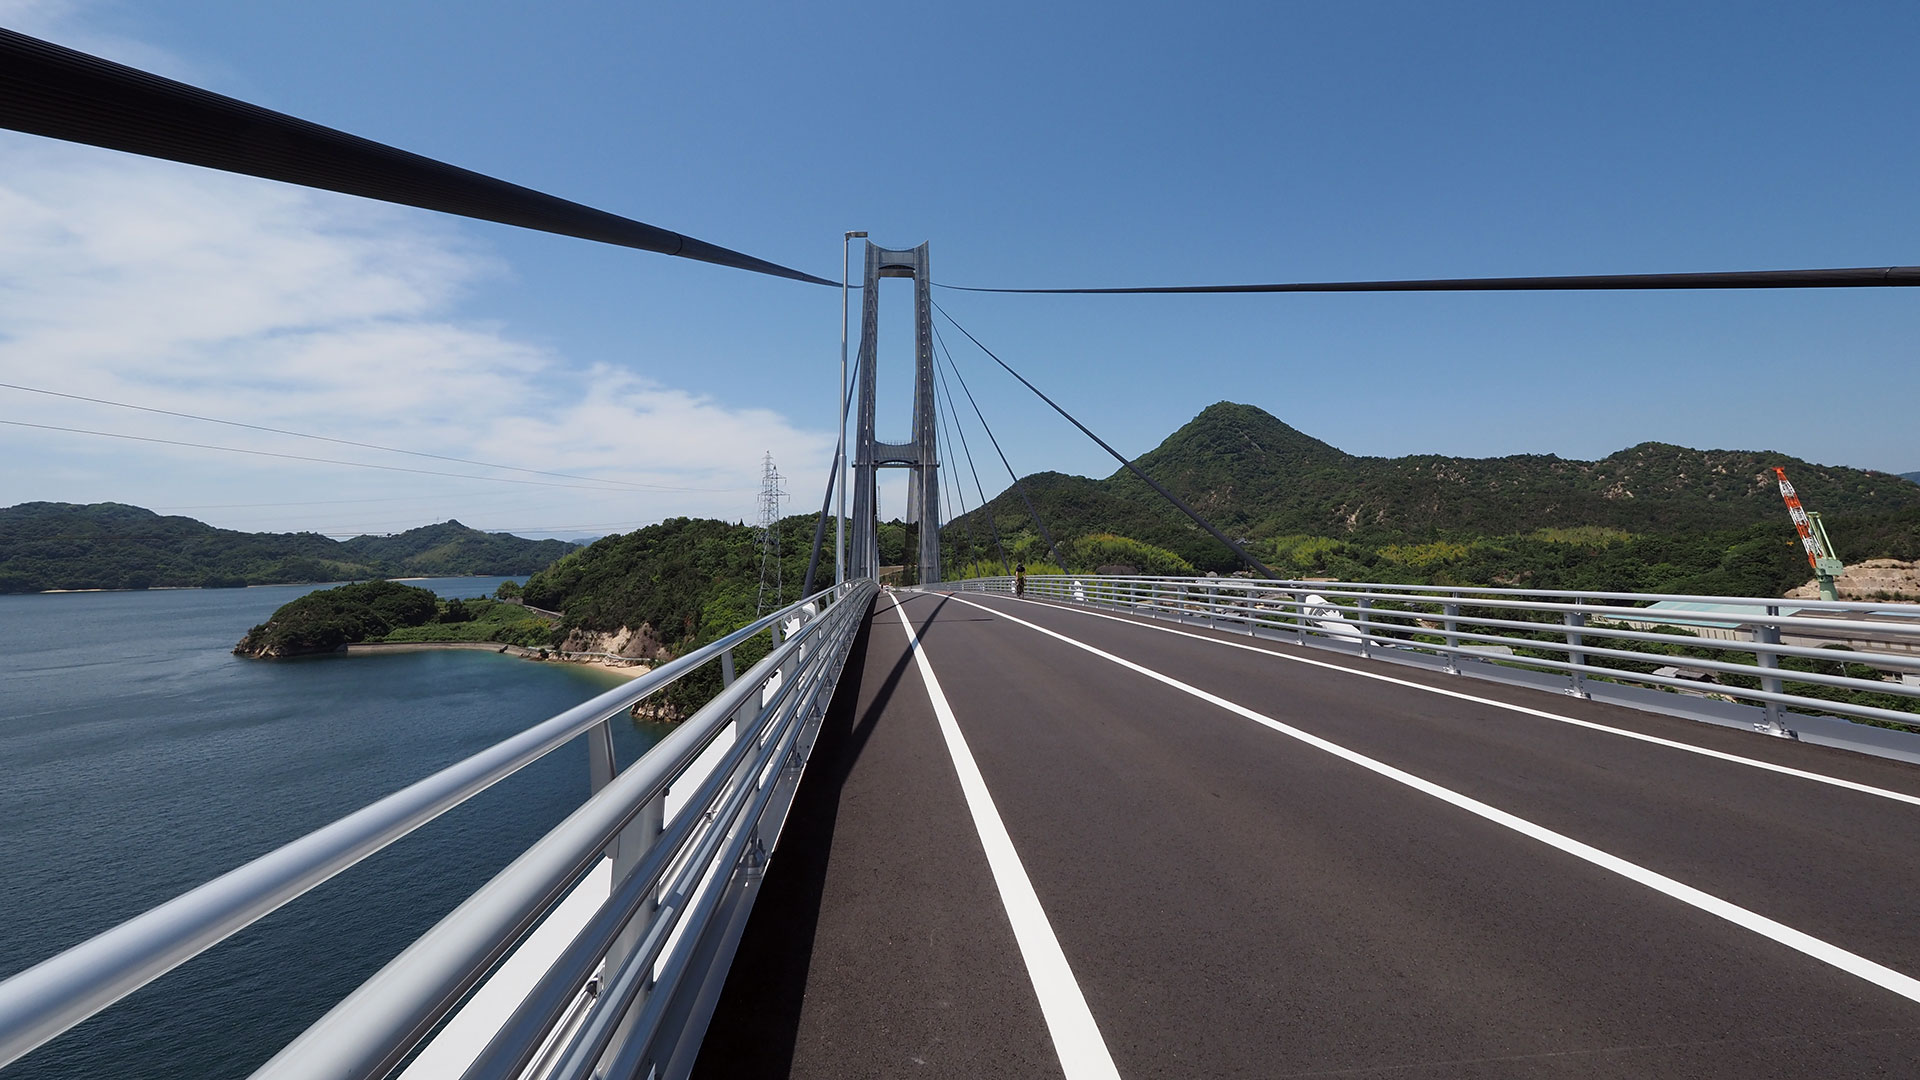 岩城島と生名島（いきなしま）を結ぶ岩城橋（いわぎはし）は2022年3月20日に完成し、これにより「ゆめしま海道」は全線開通しました。